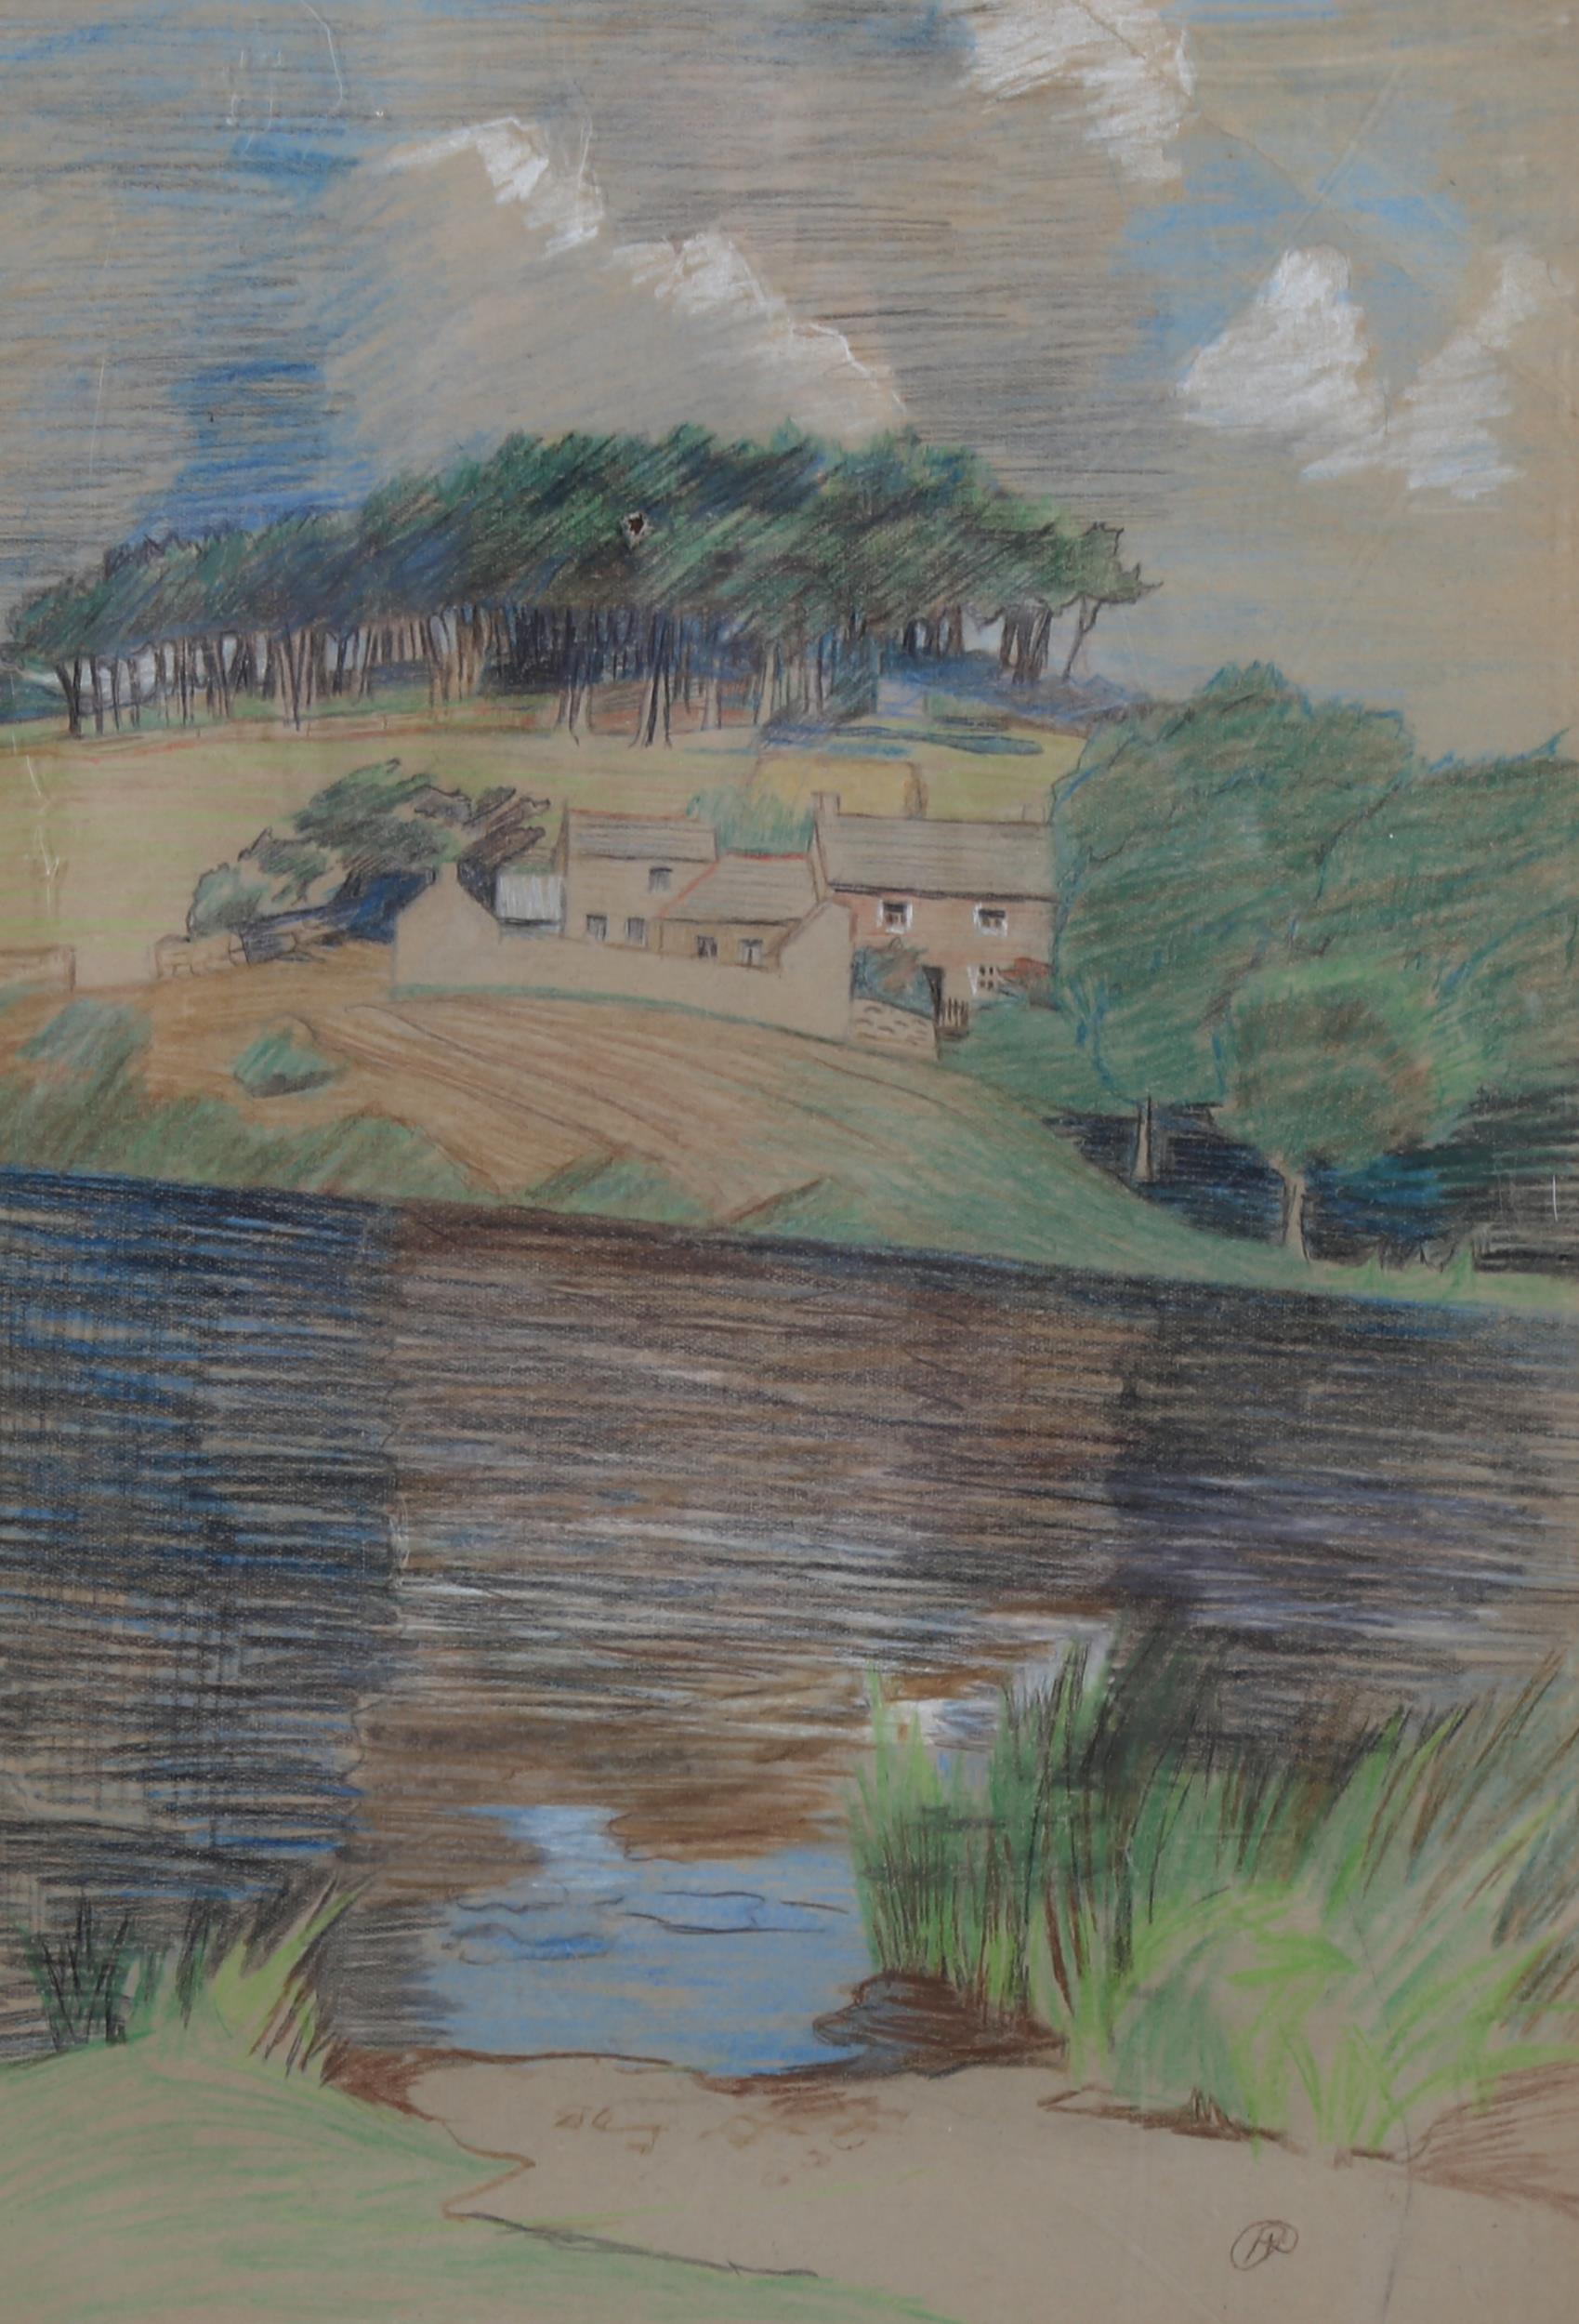 Arabella Rankin (1871 - 1943), Cornish farm landscape, circa 1920s, pastels, signed, 39cm x 27cm,